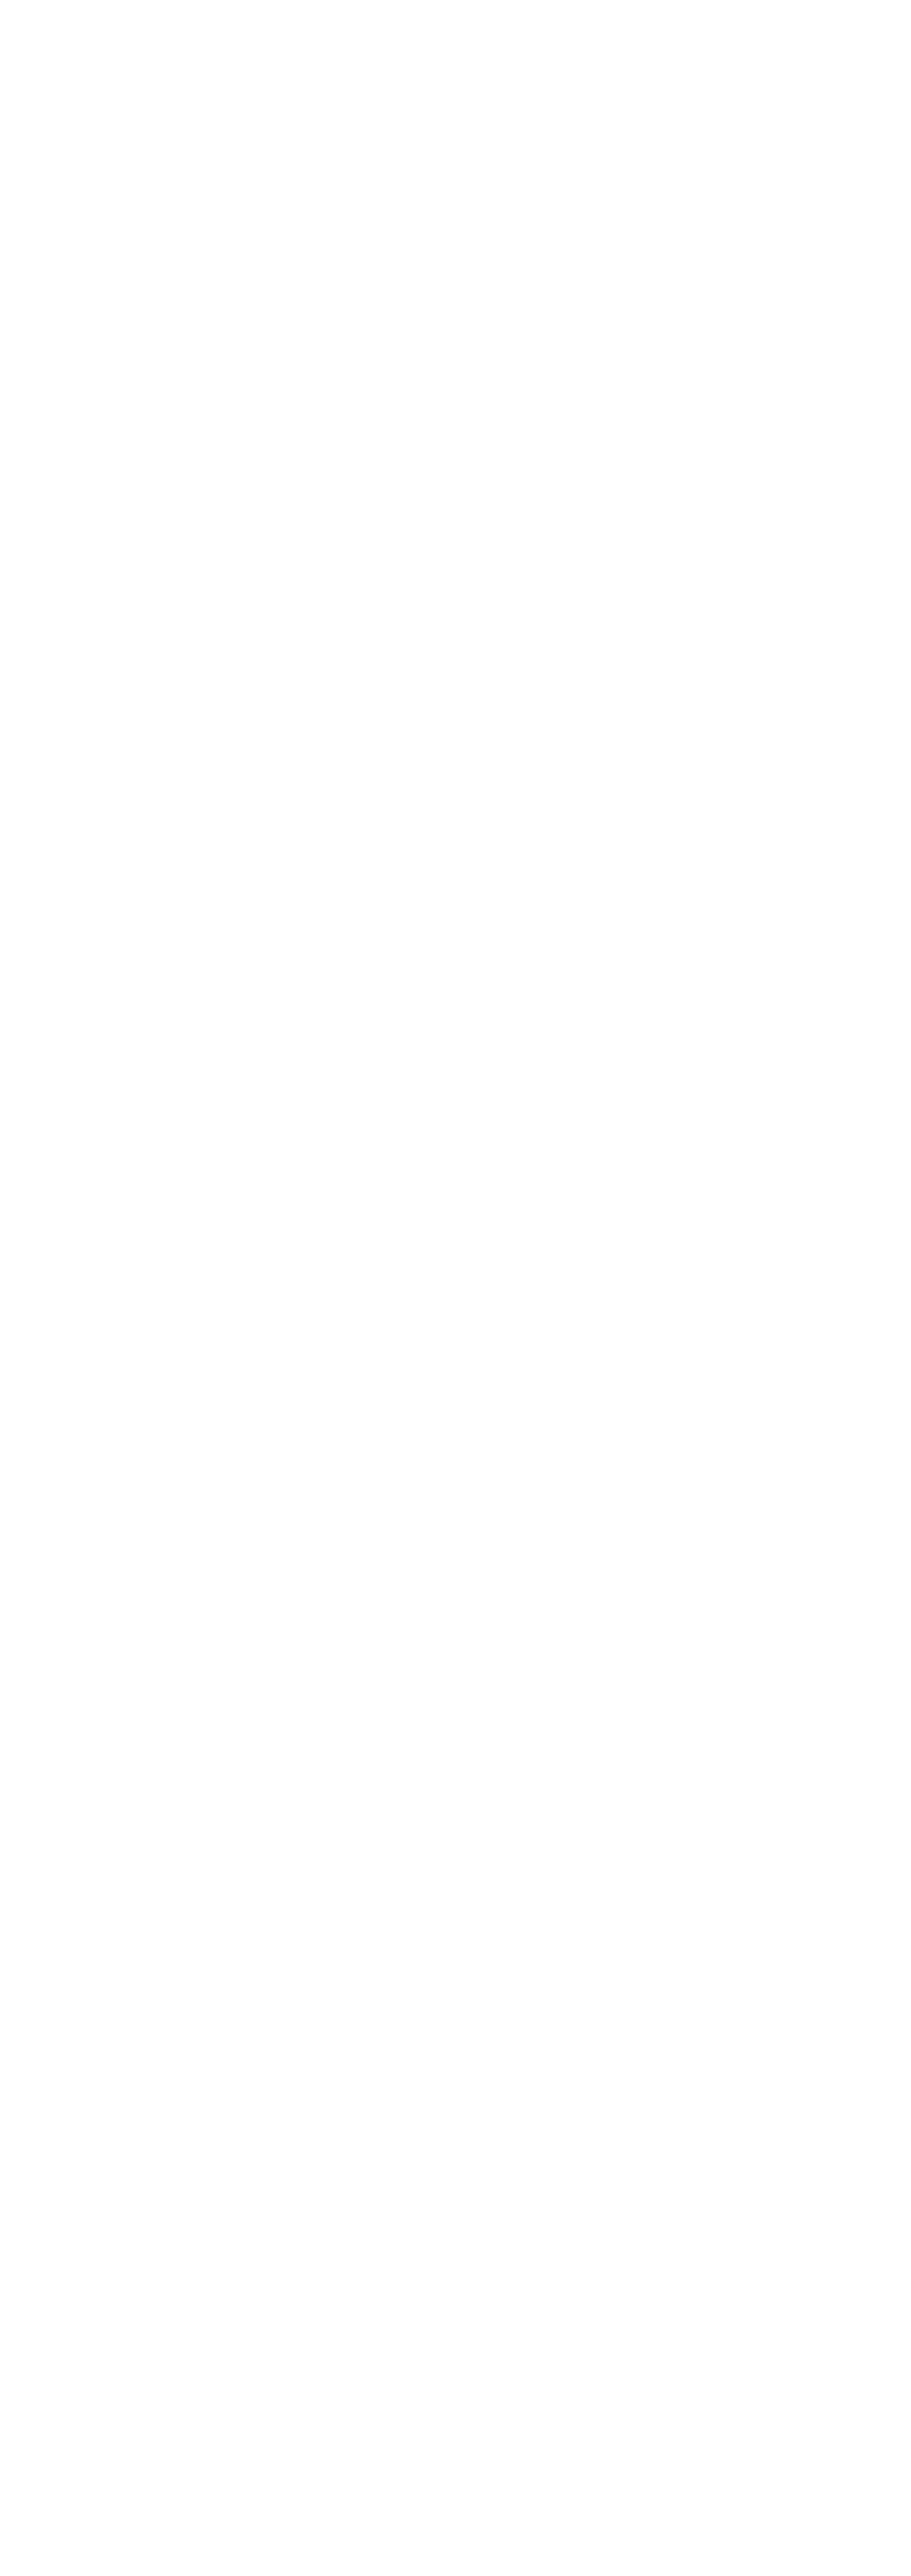 Blue Room Bar menu image - left side